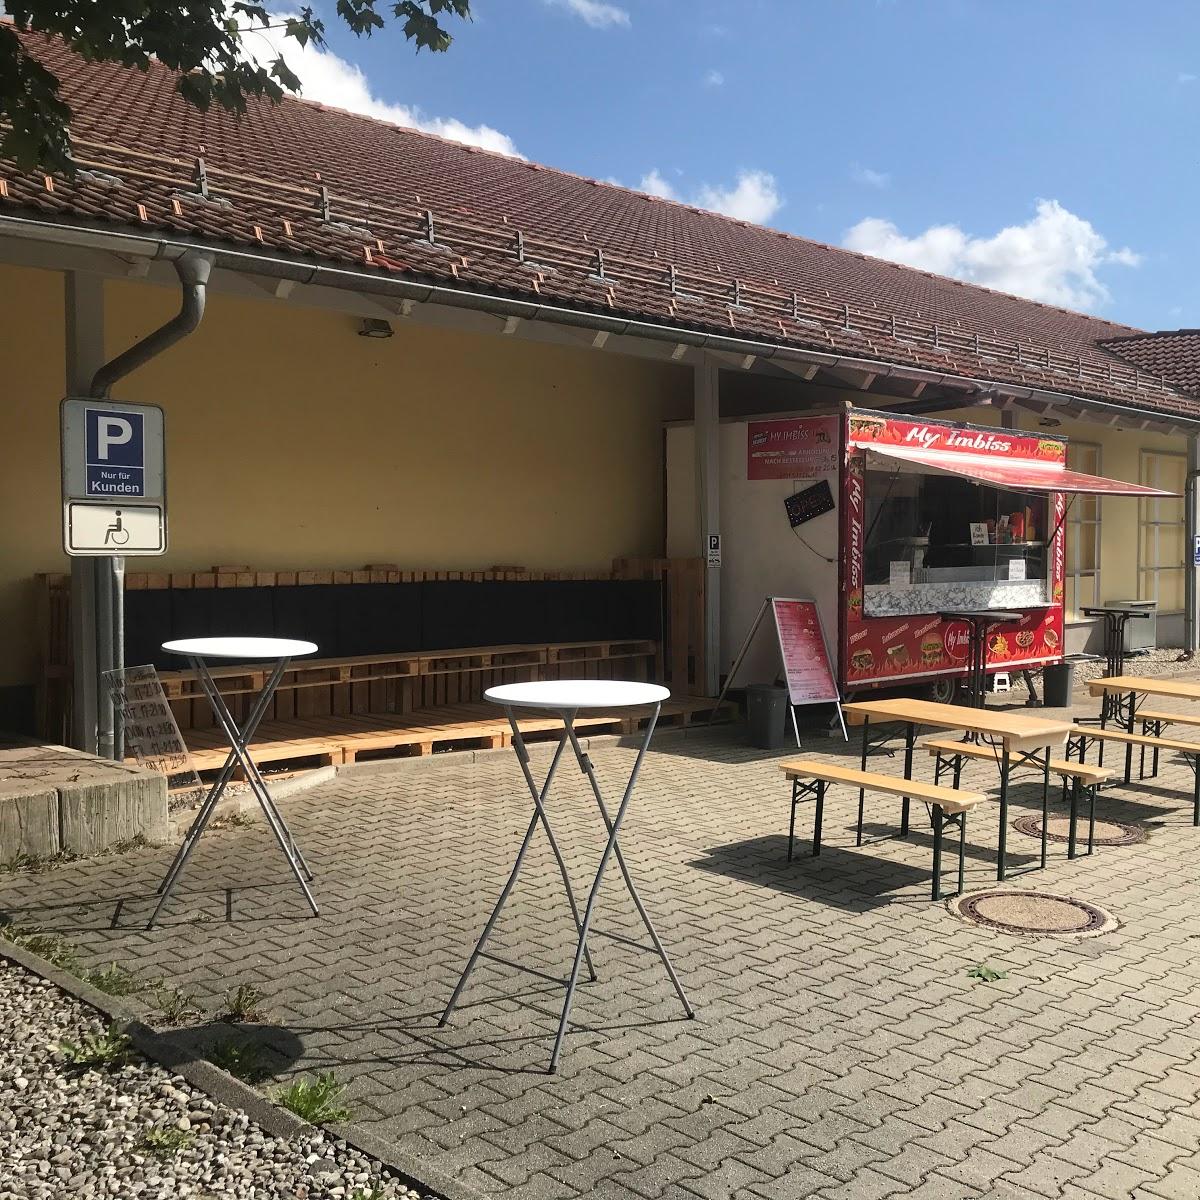 Restaurant "My Imbiss Döner Kebab" in Wertach